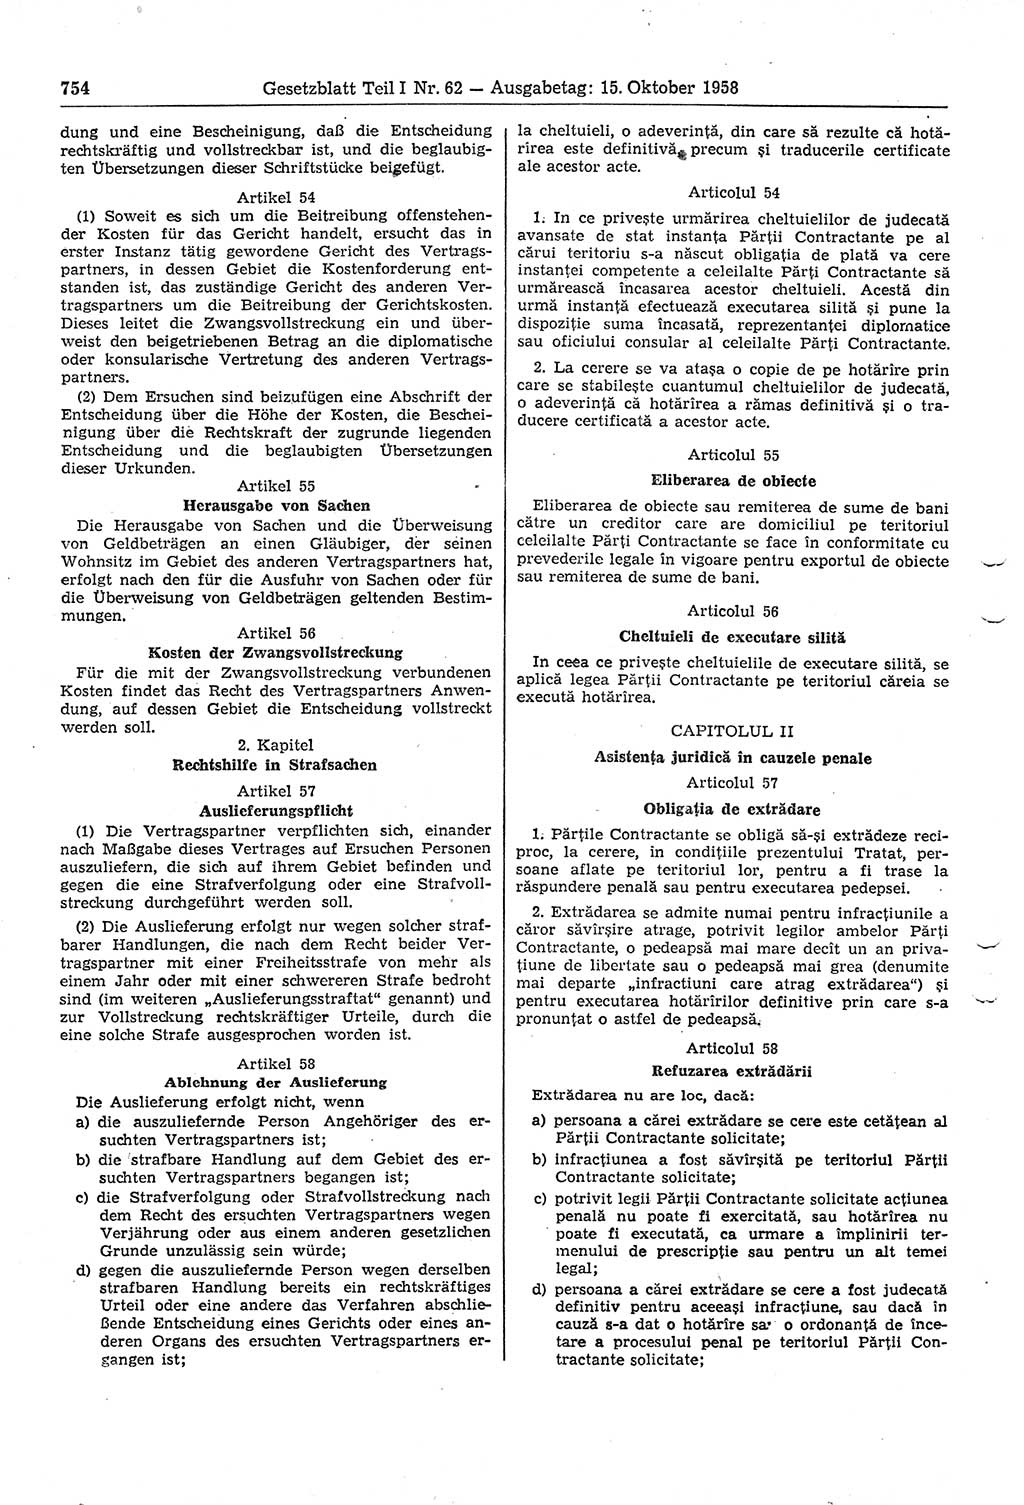 Gesetzblatt (GBl.) der Deutschen Demokratischen Republik (DDR) Teil Ⅰ 1958, Seite 754 (GBl. DDR Ⅰ 1958, S. 754)